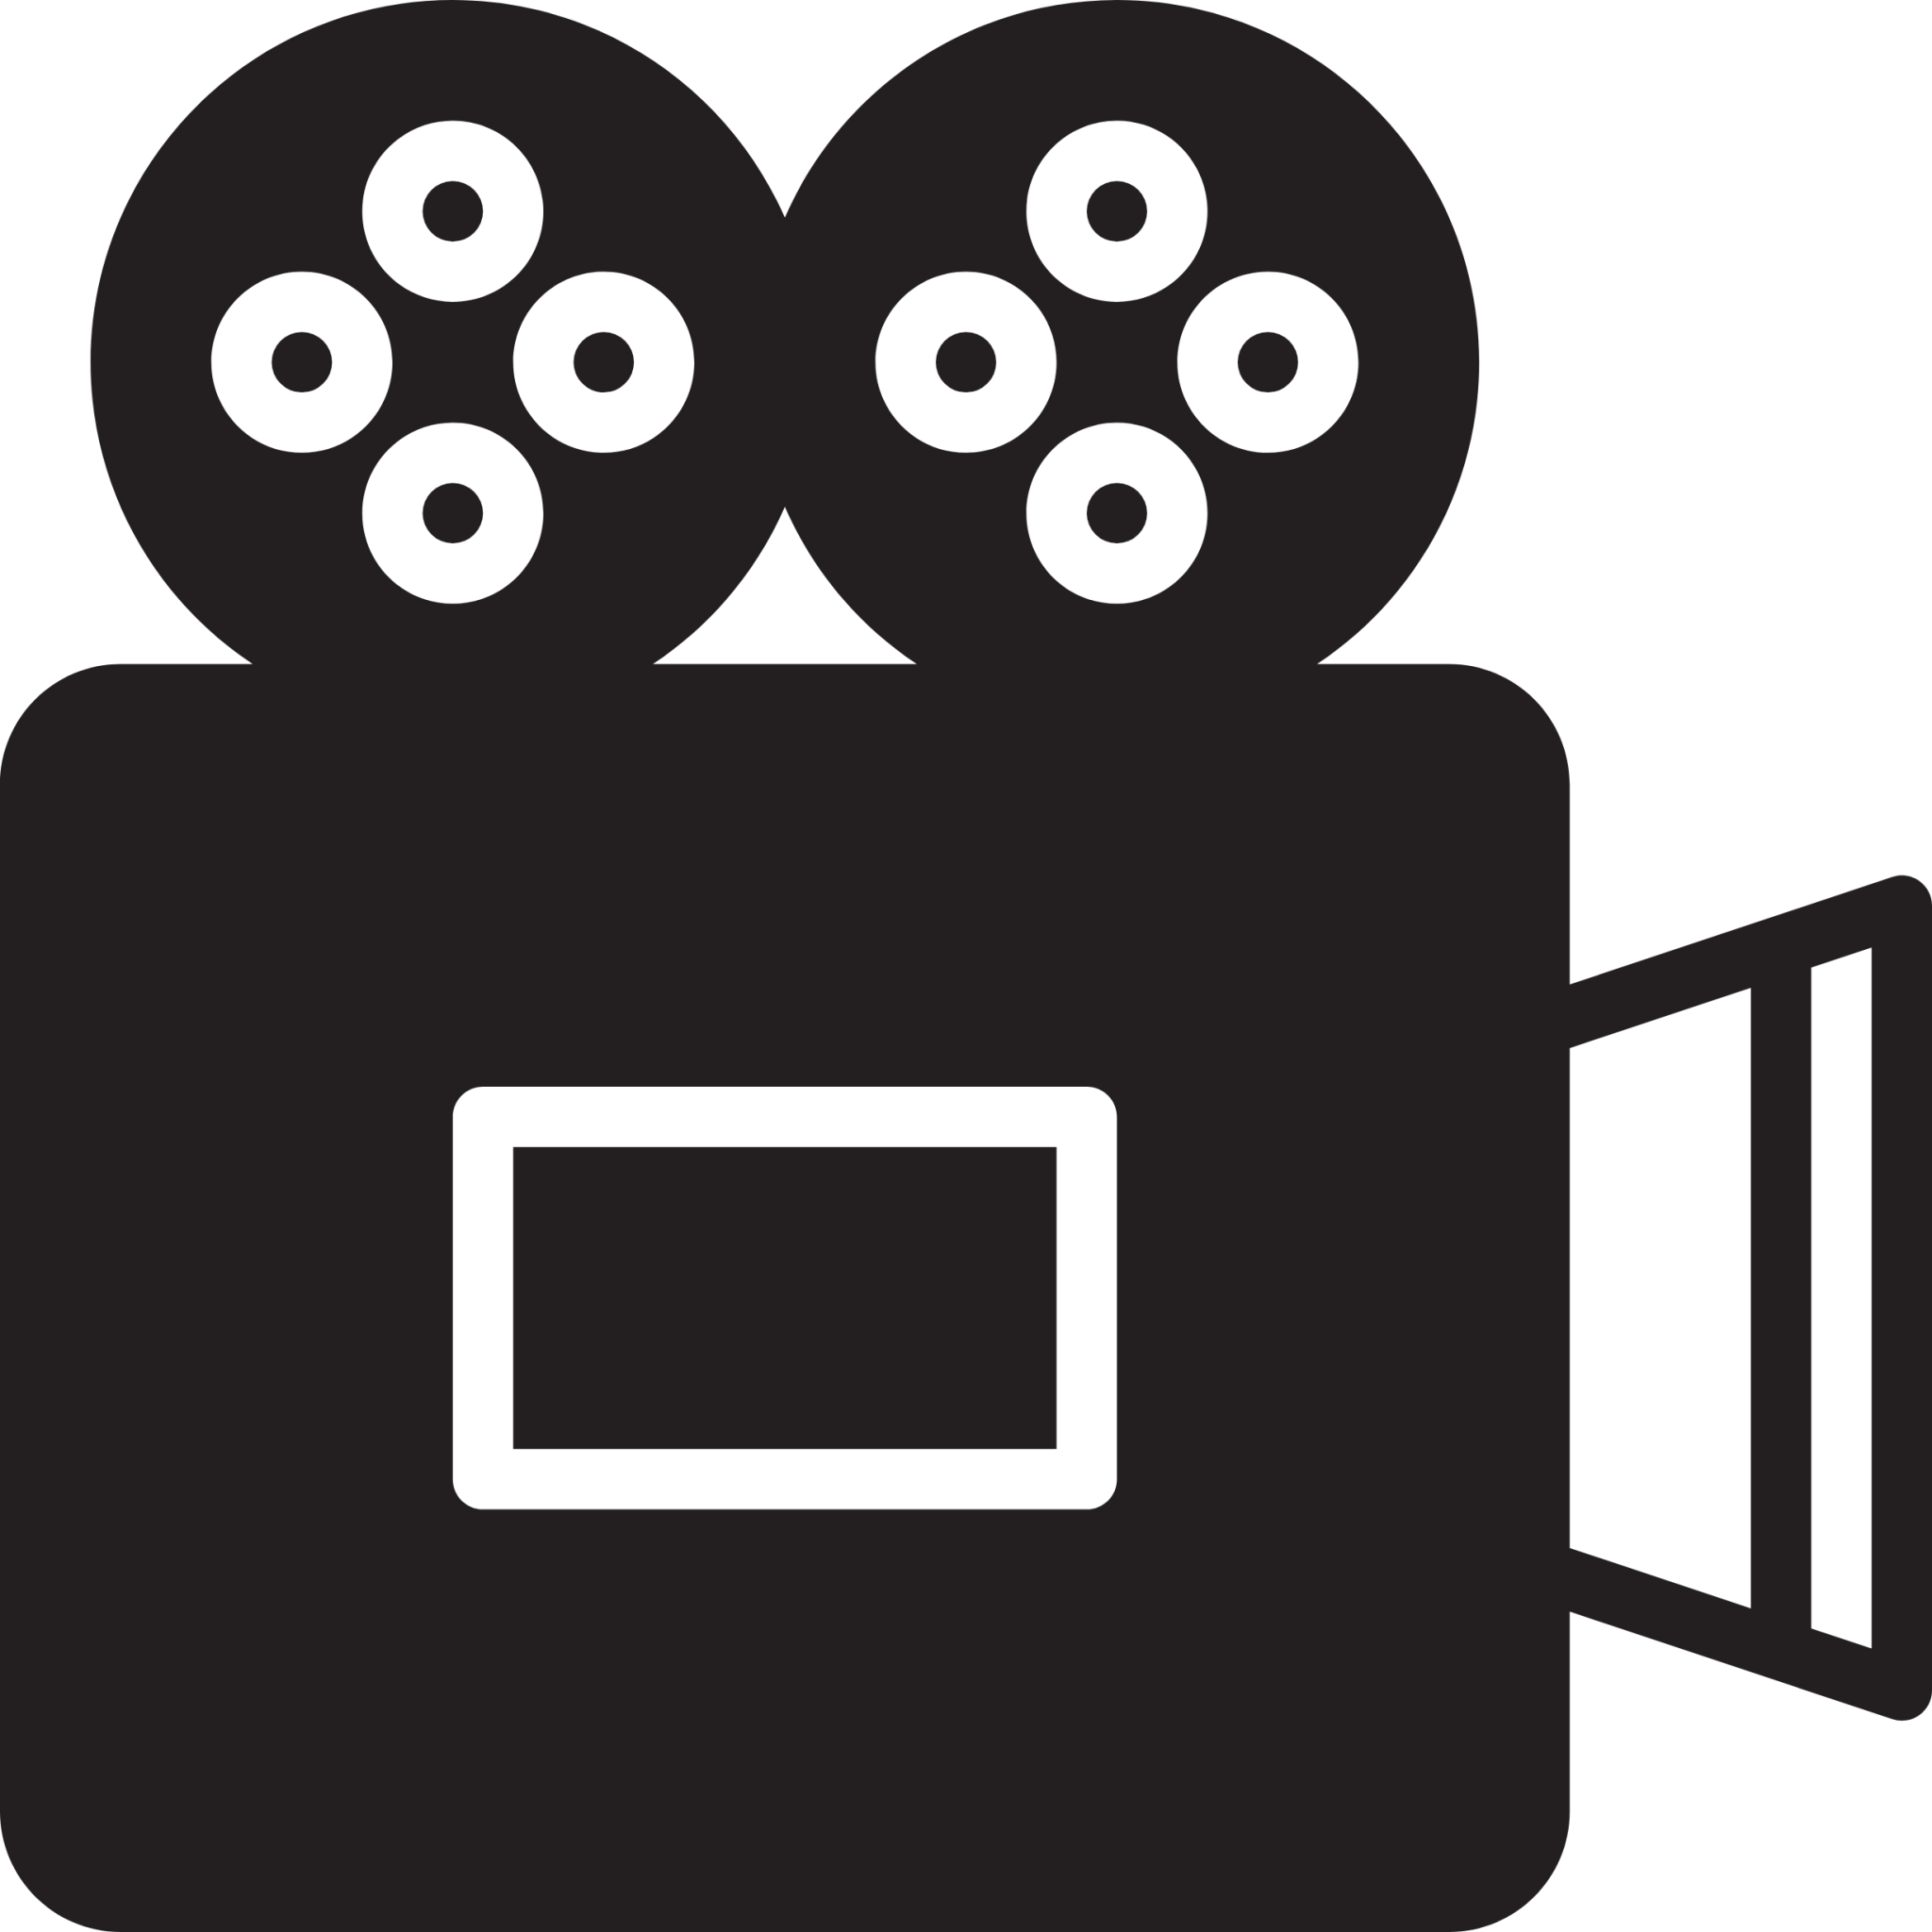 film camera icon